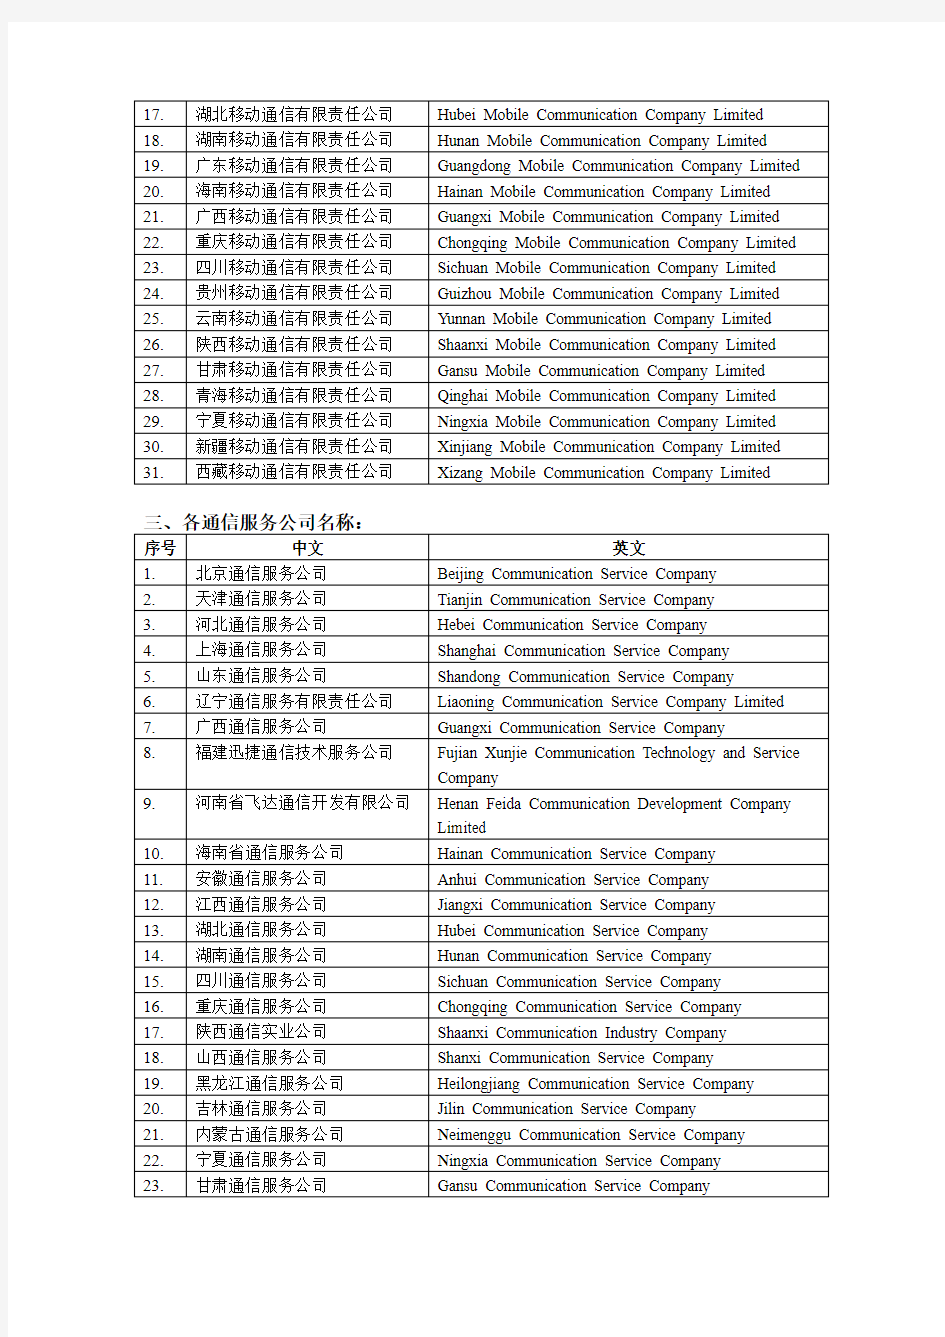 中国移动各公司、职称中英文对照翻译(第三版)